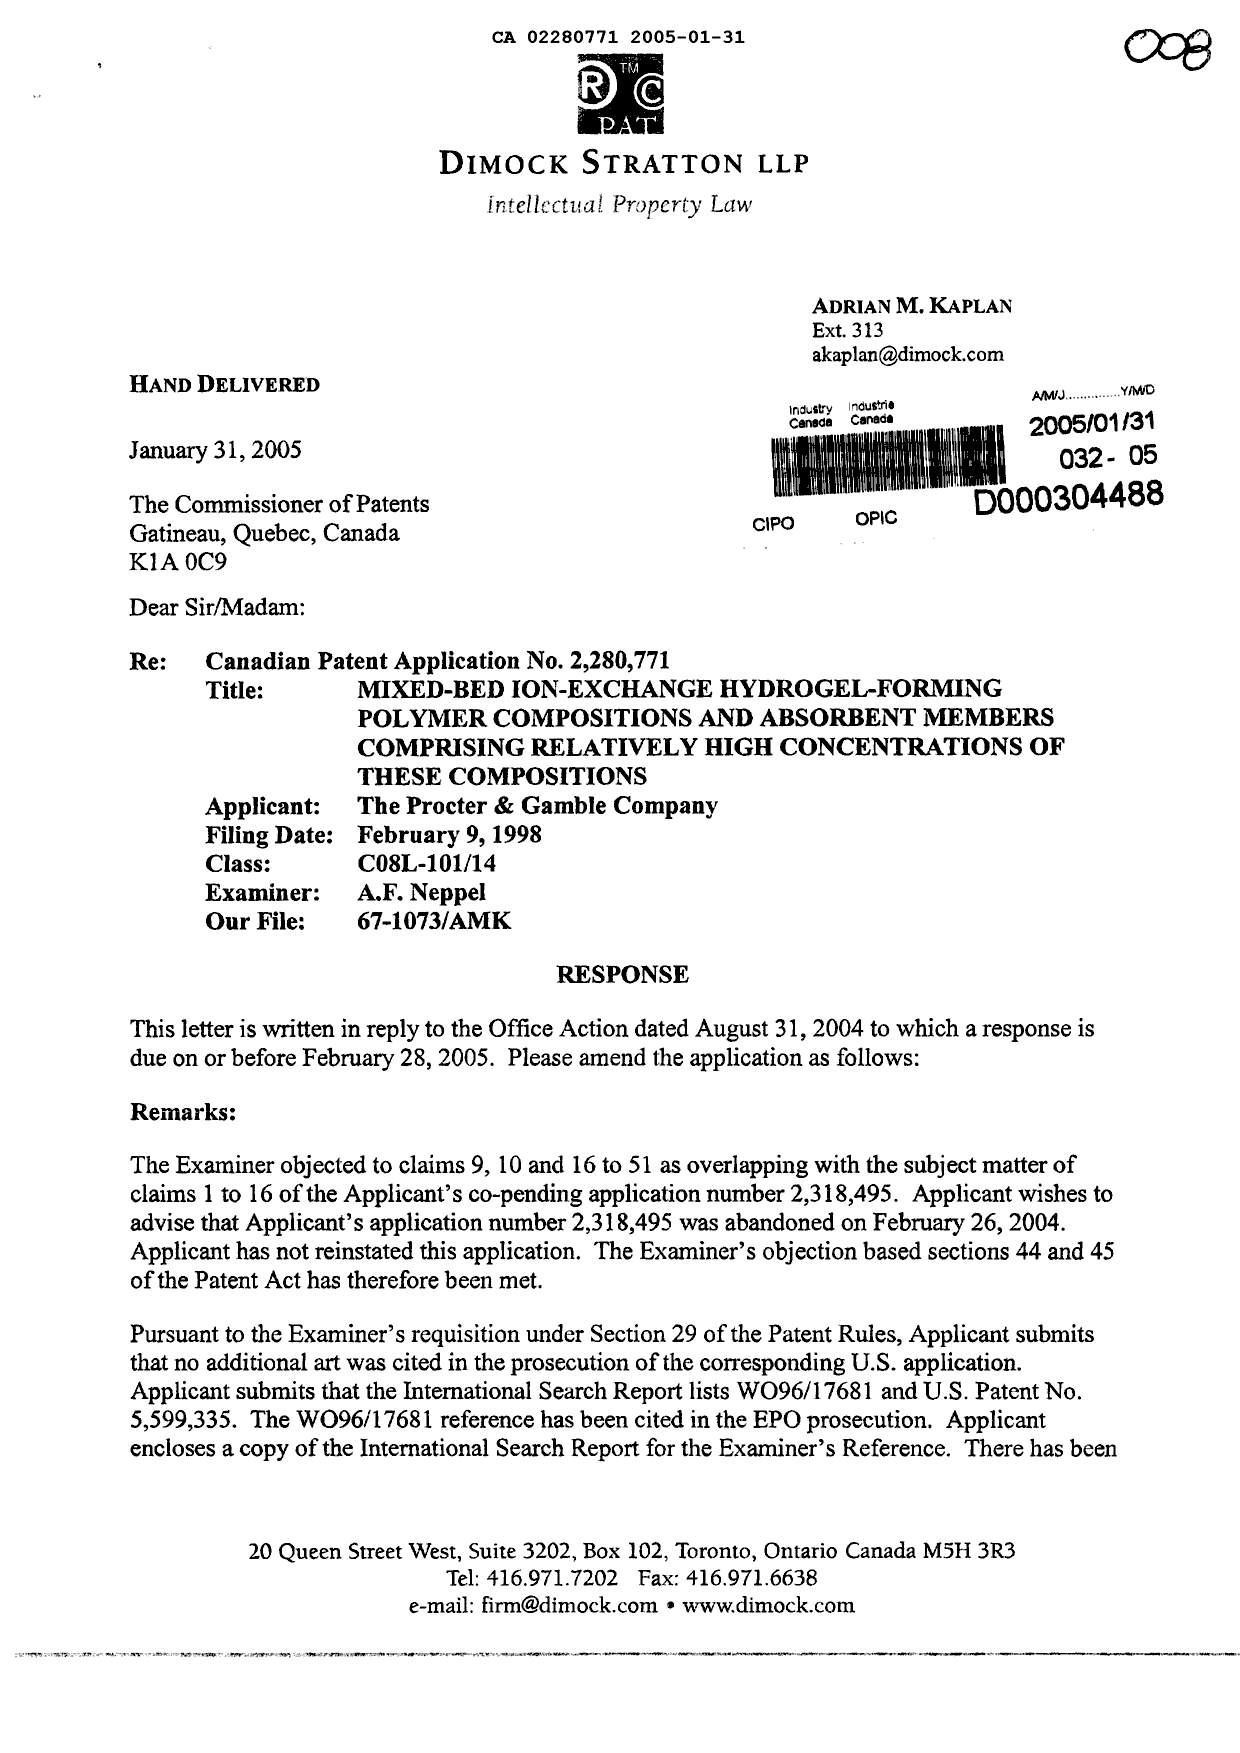 Document de brevet canadien 2280771. Poursuite-Amendment 20050131. Image 1 de 2